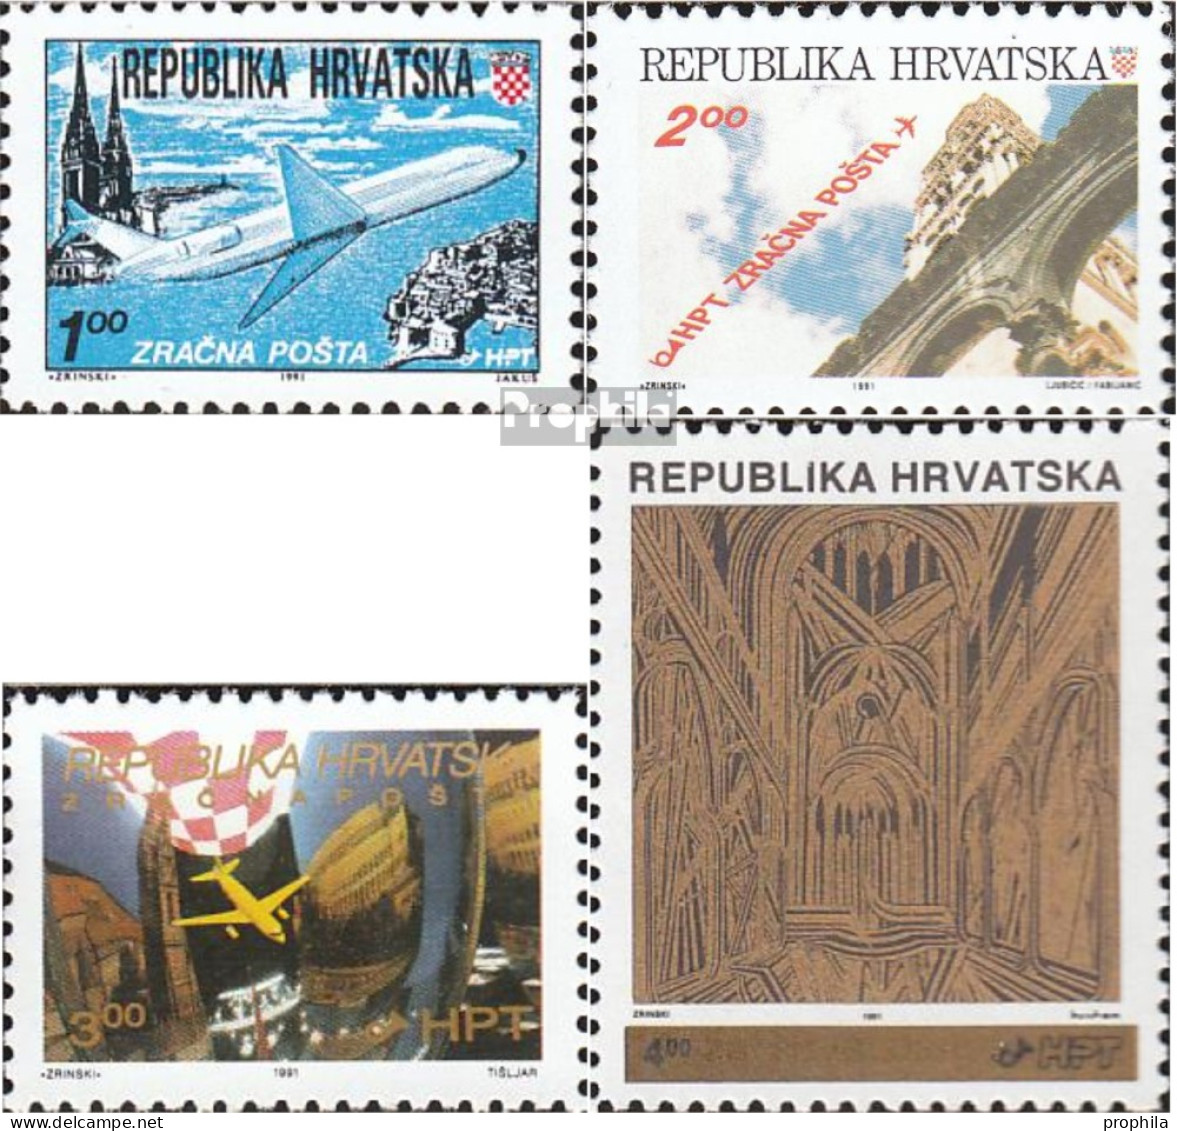 Kroatien 179A,180A A,181,182A (kompl.Ausg.) Postfrisch 1991 Flugpost, Aufdruckausgabe - Croatie